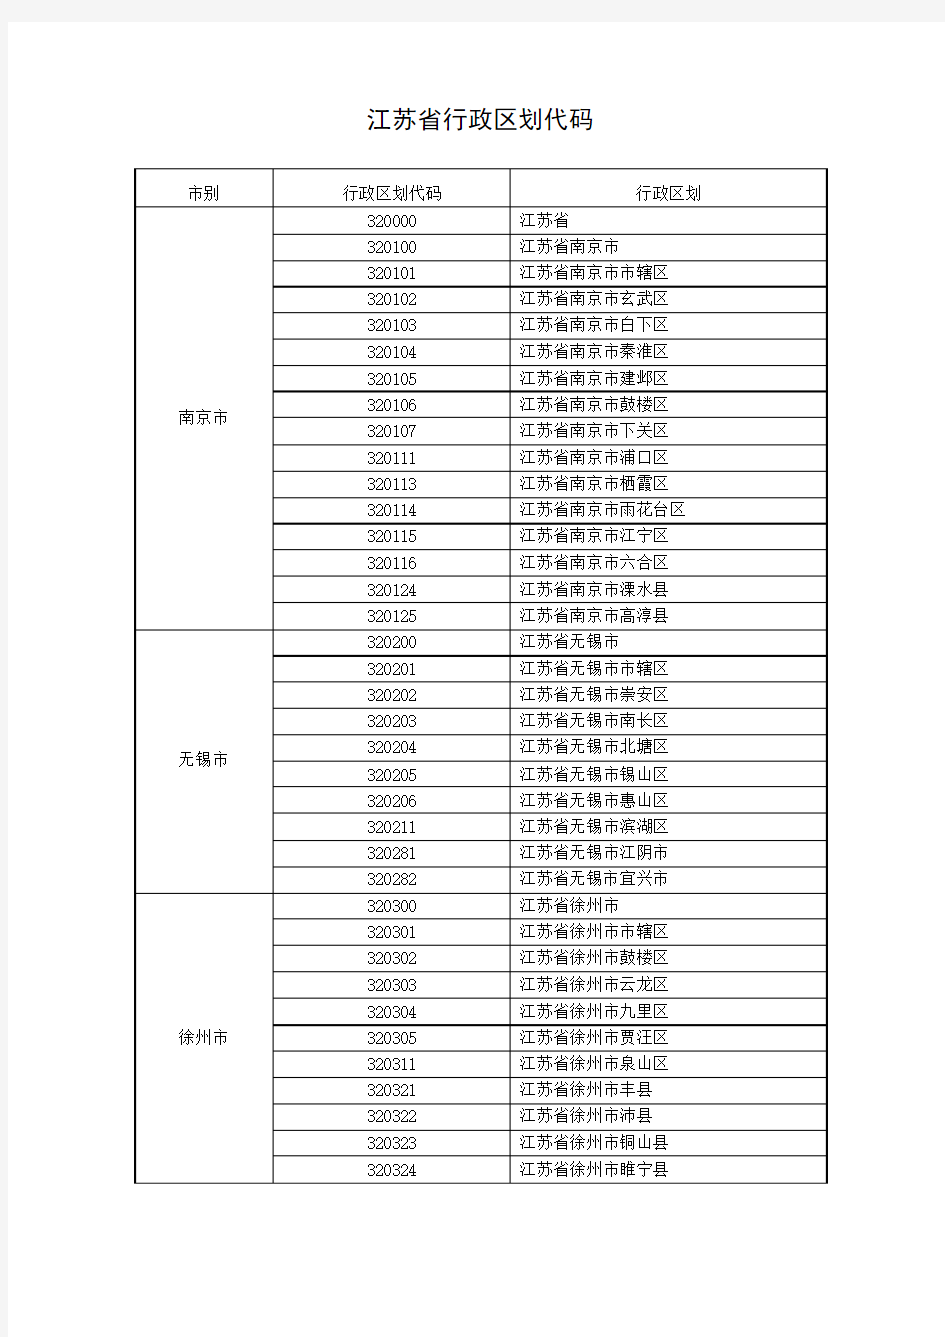 江苏省行政区划代码